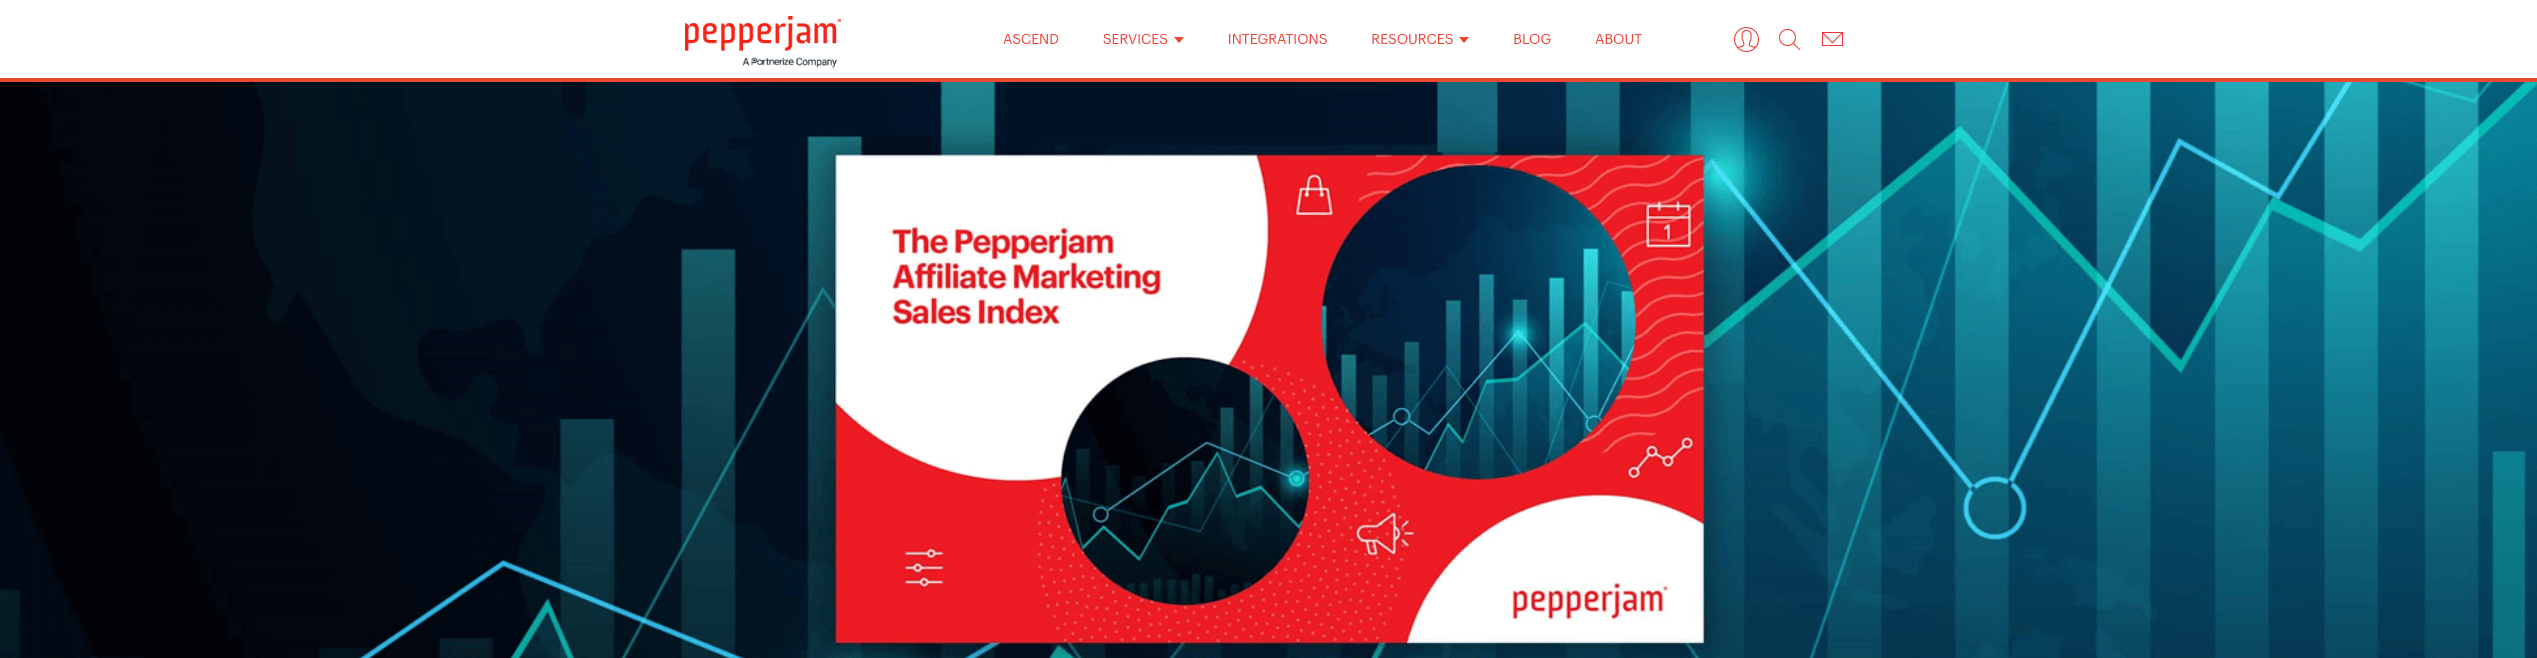 Pepper Jam Banner